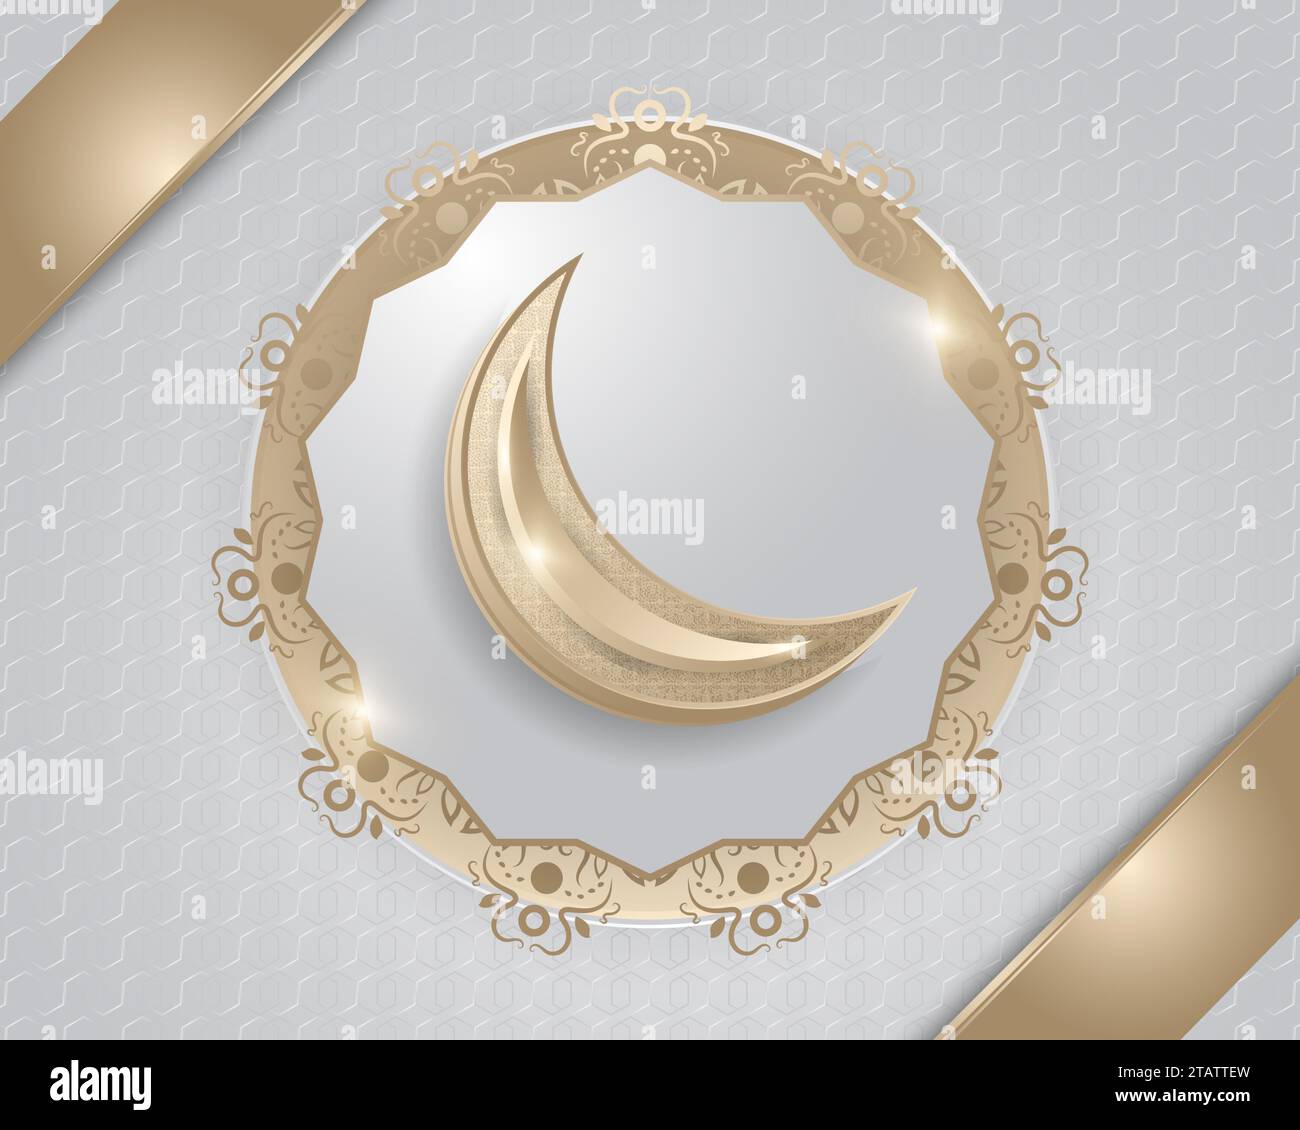 Islamischer Hintergrund mit Goldmond und luxuriöse Dekorationen auf weißem Hintergrund mit abstraktem Muster Stock Vektor